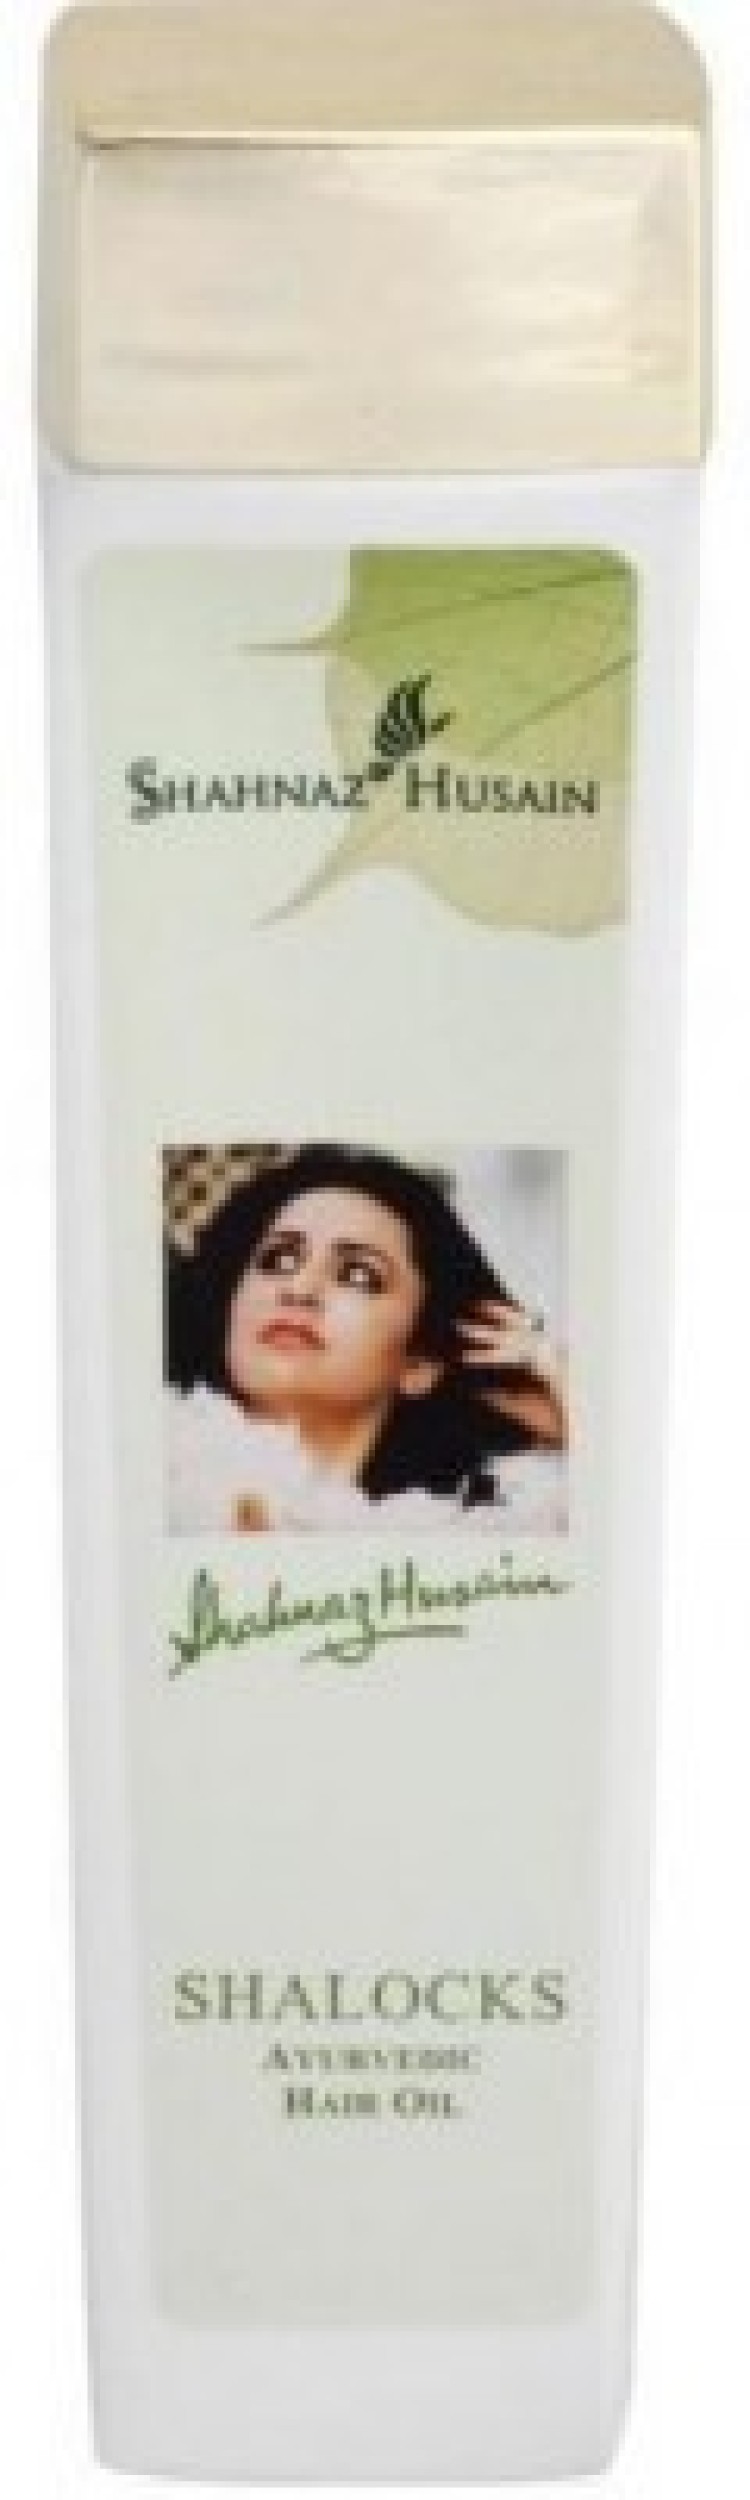 Shahnaz Husain 100GM Shaweeds plus Hair Oil